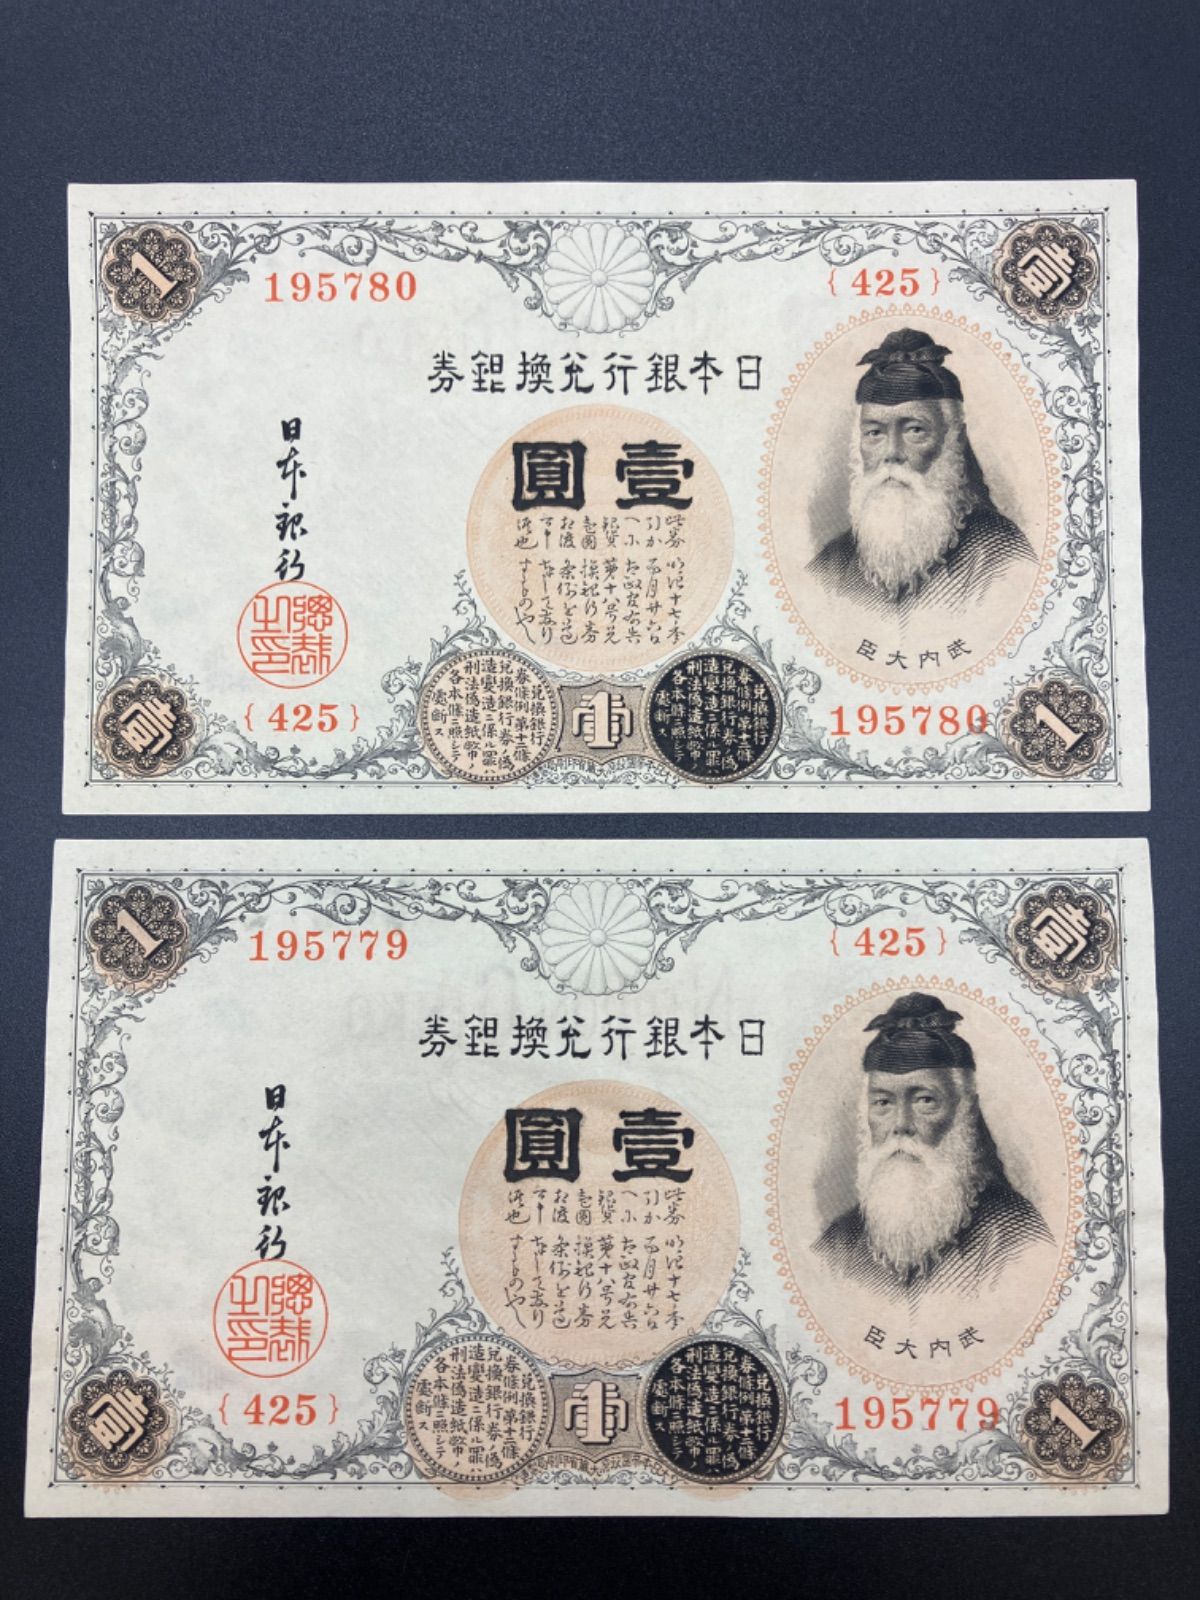 アラビア数字1円札 445組 旧紙幣 - 旧貨幣